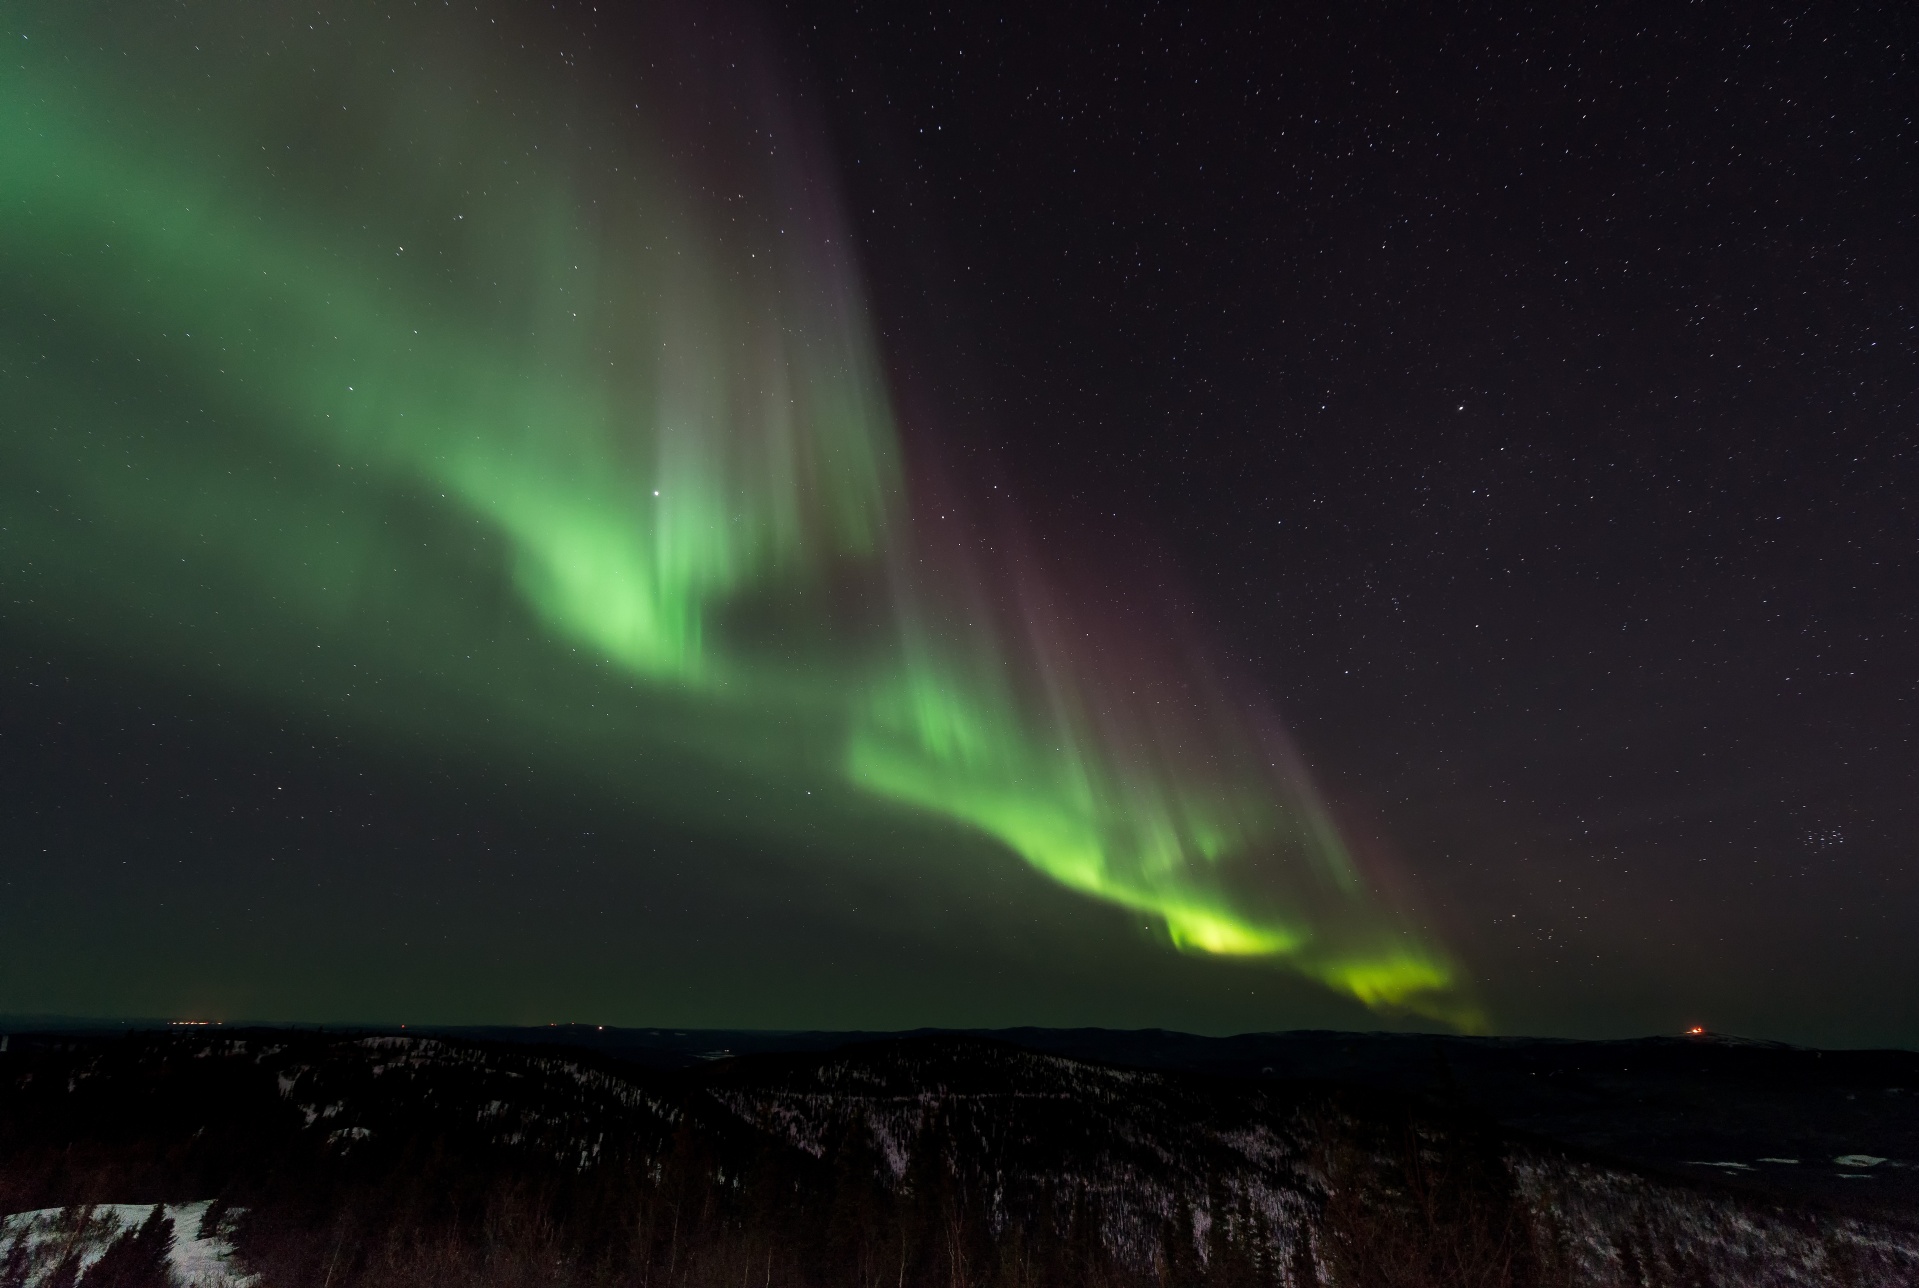 Aurora Borealis, a magia da Terra